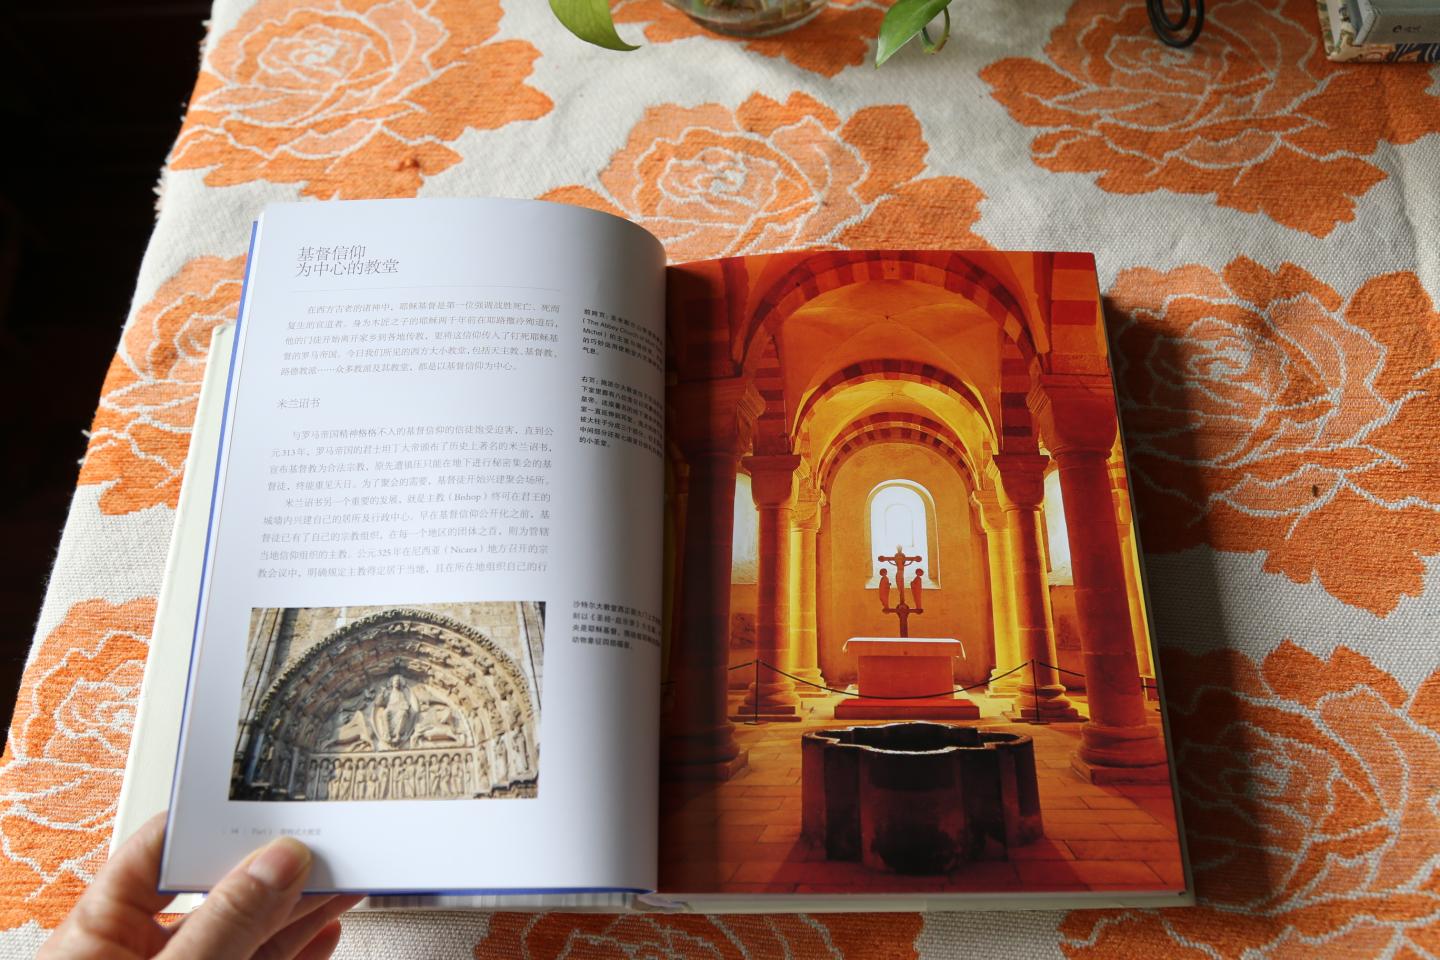 做为了解法国和德国的大教堂是一本不错的书，文字简练明了，16开的书展示图片有一定局限，但是也能满足阅读的需要，谢谢送货小哥的优质服务。